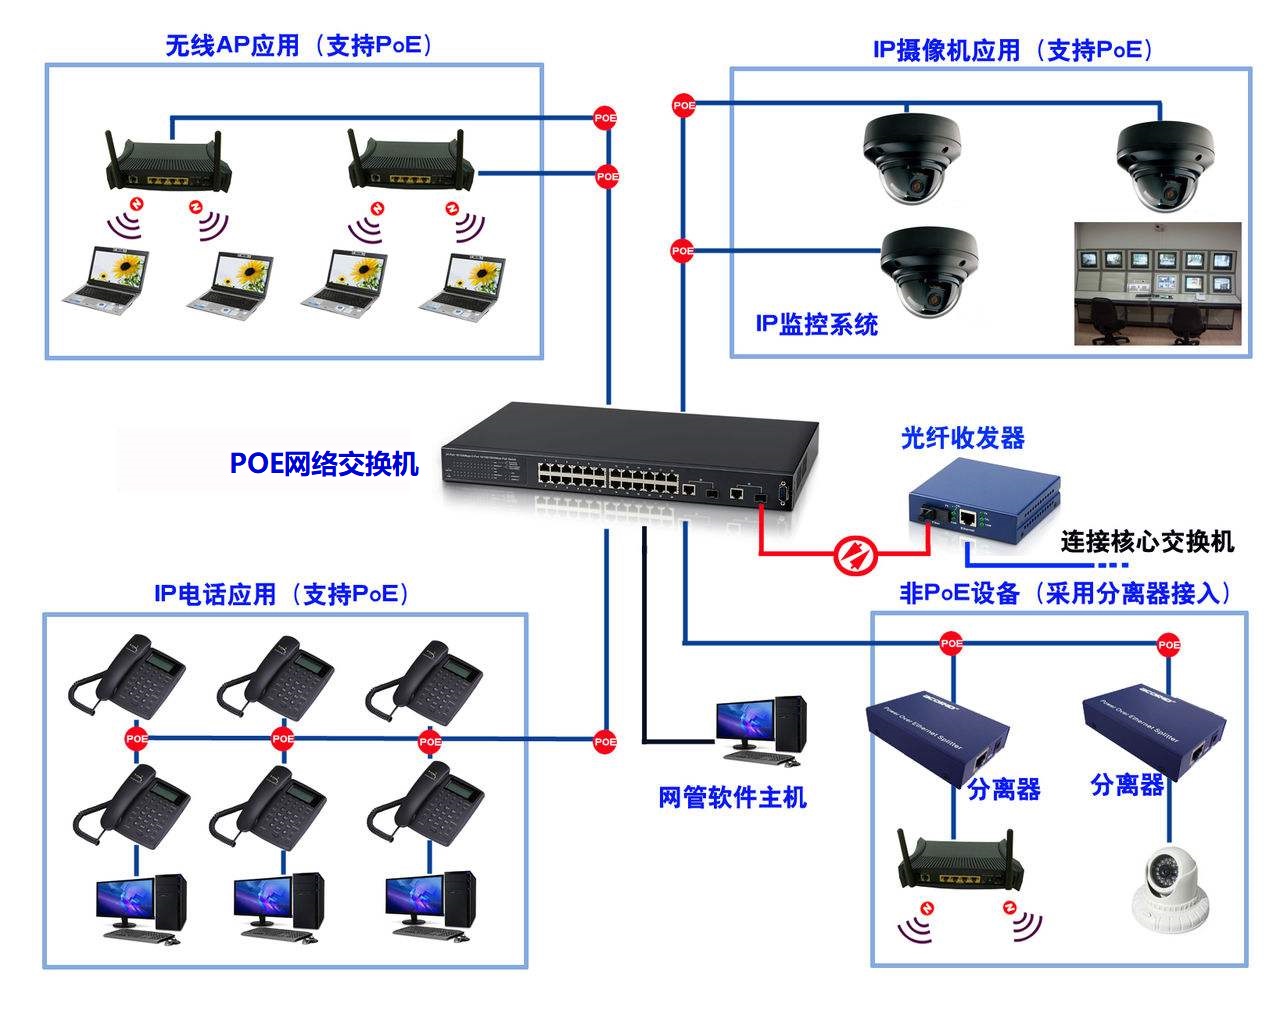  安防视频监控系统终端供电方式：以太网供电（PoE）